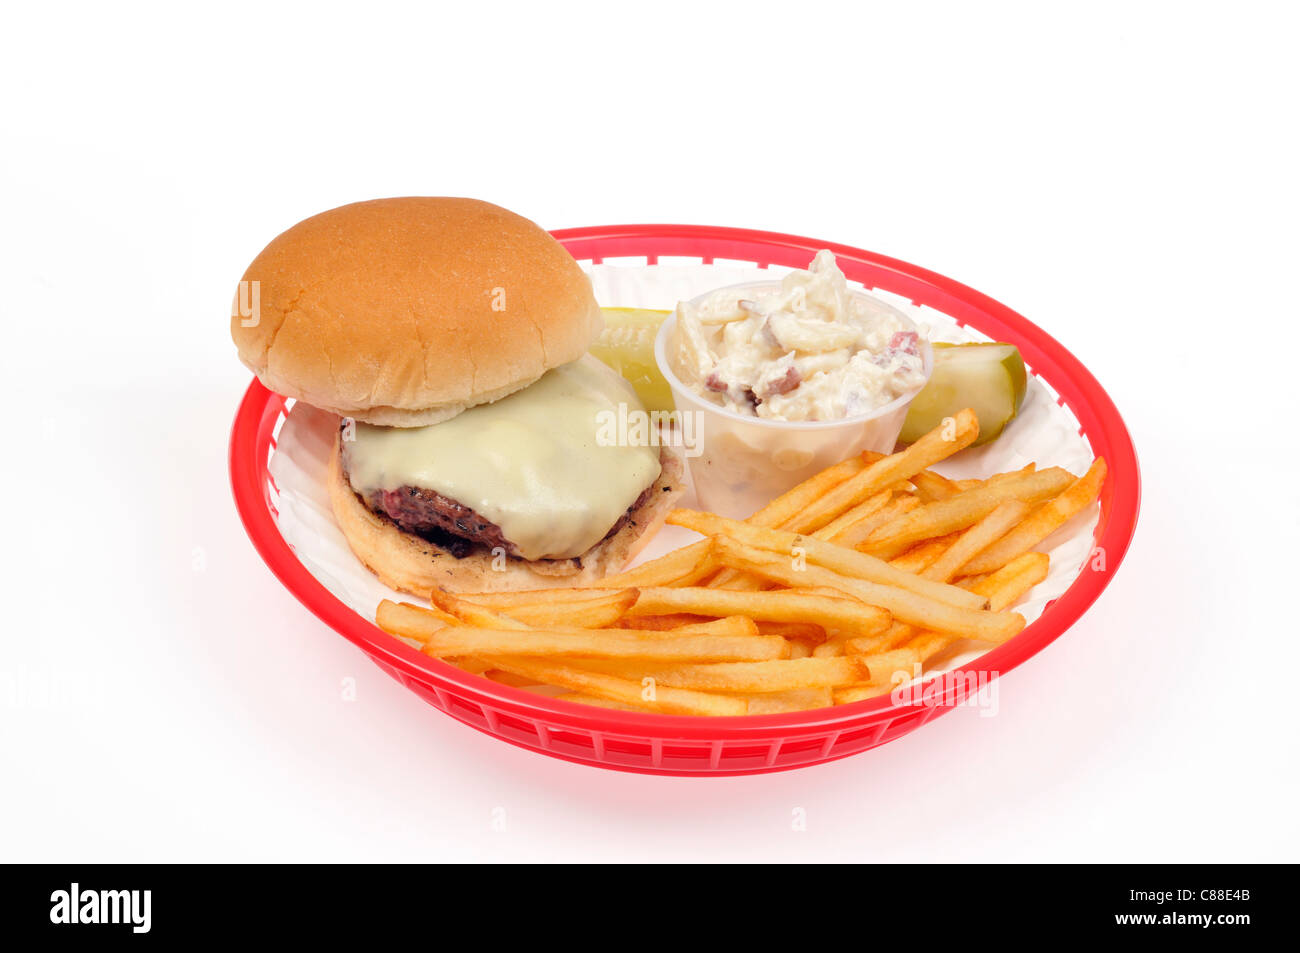 Cheeseburger avec frites ou chips, salade de pommes de terre et cornichons en plastique rouge panier rétro sur fond blanc, découpe. USA Banque D'Images